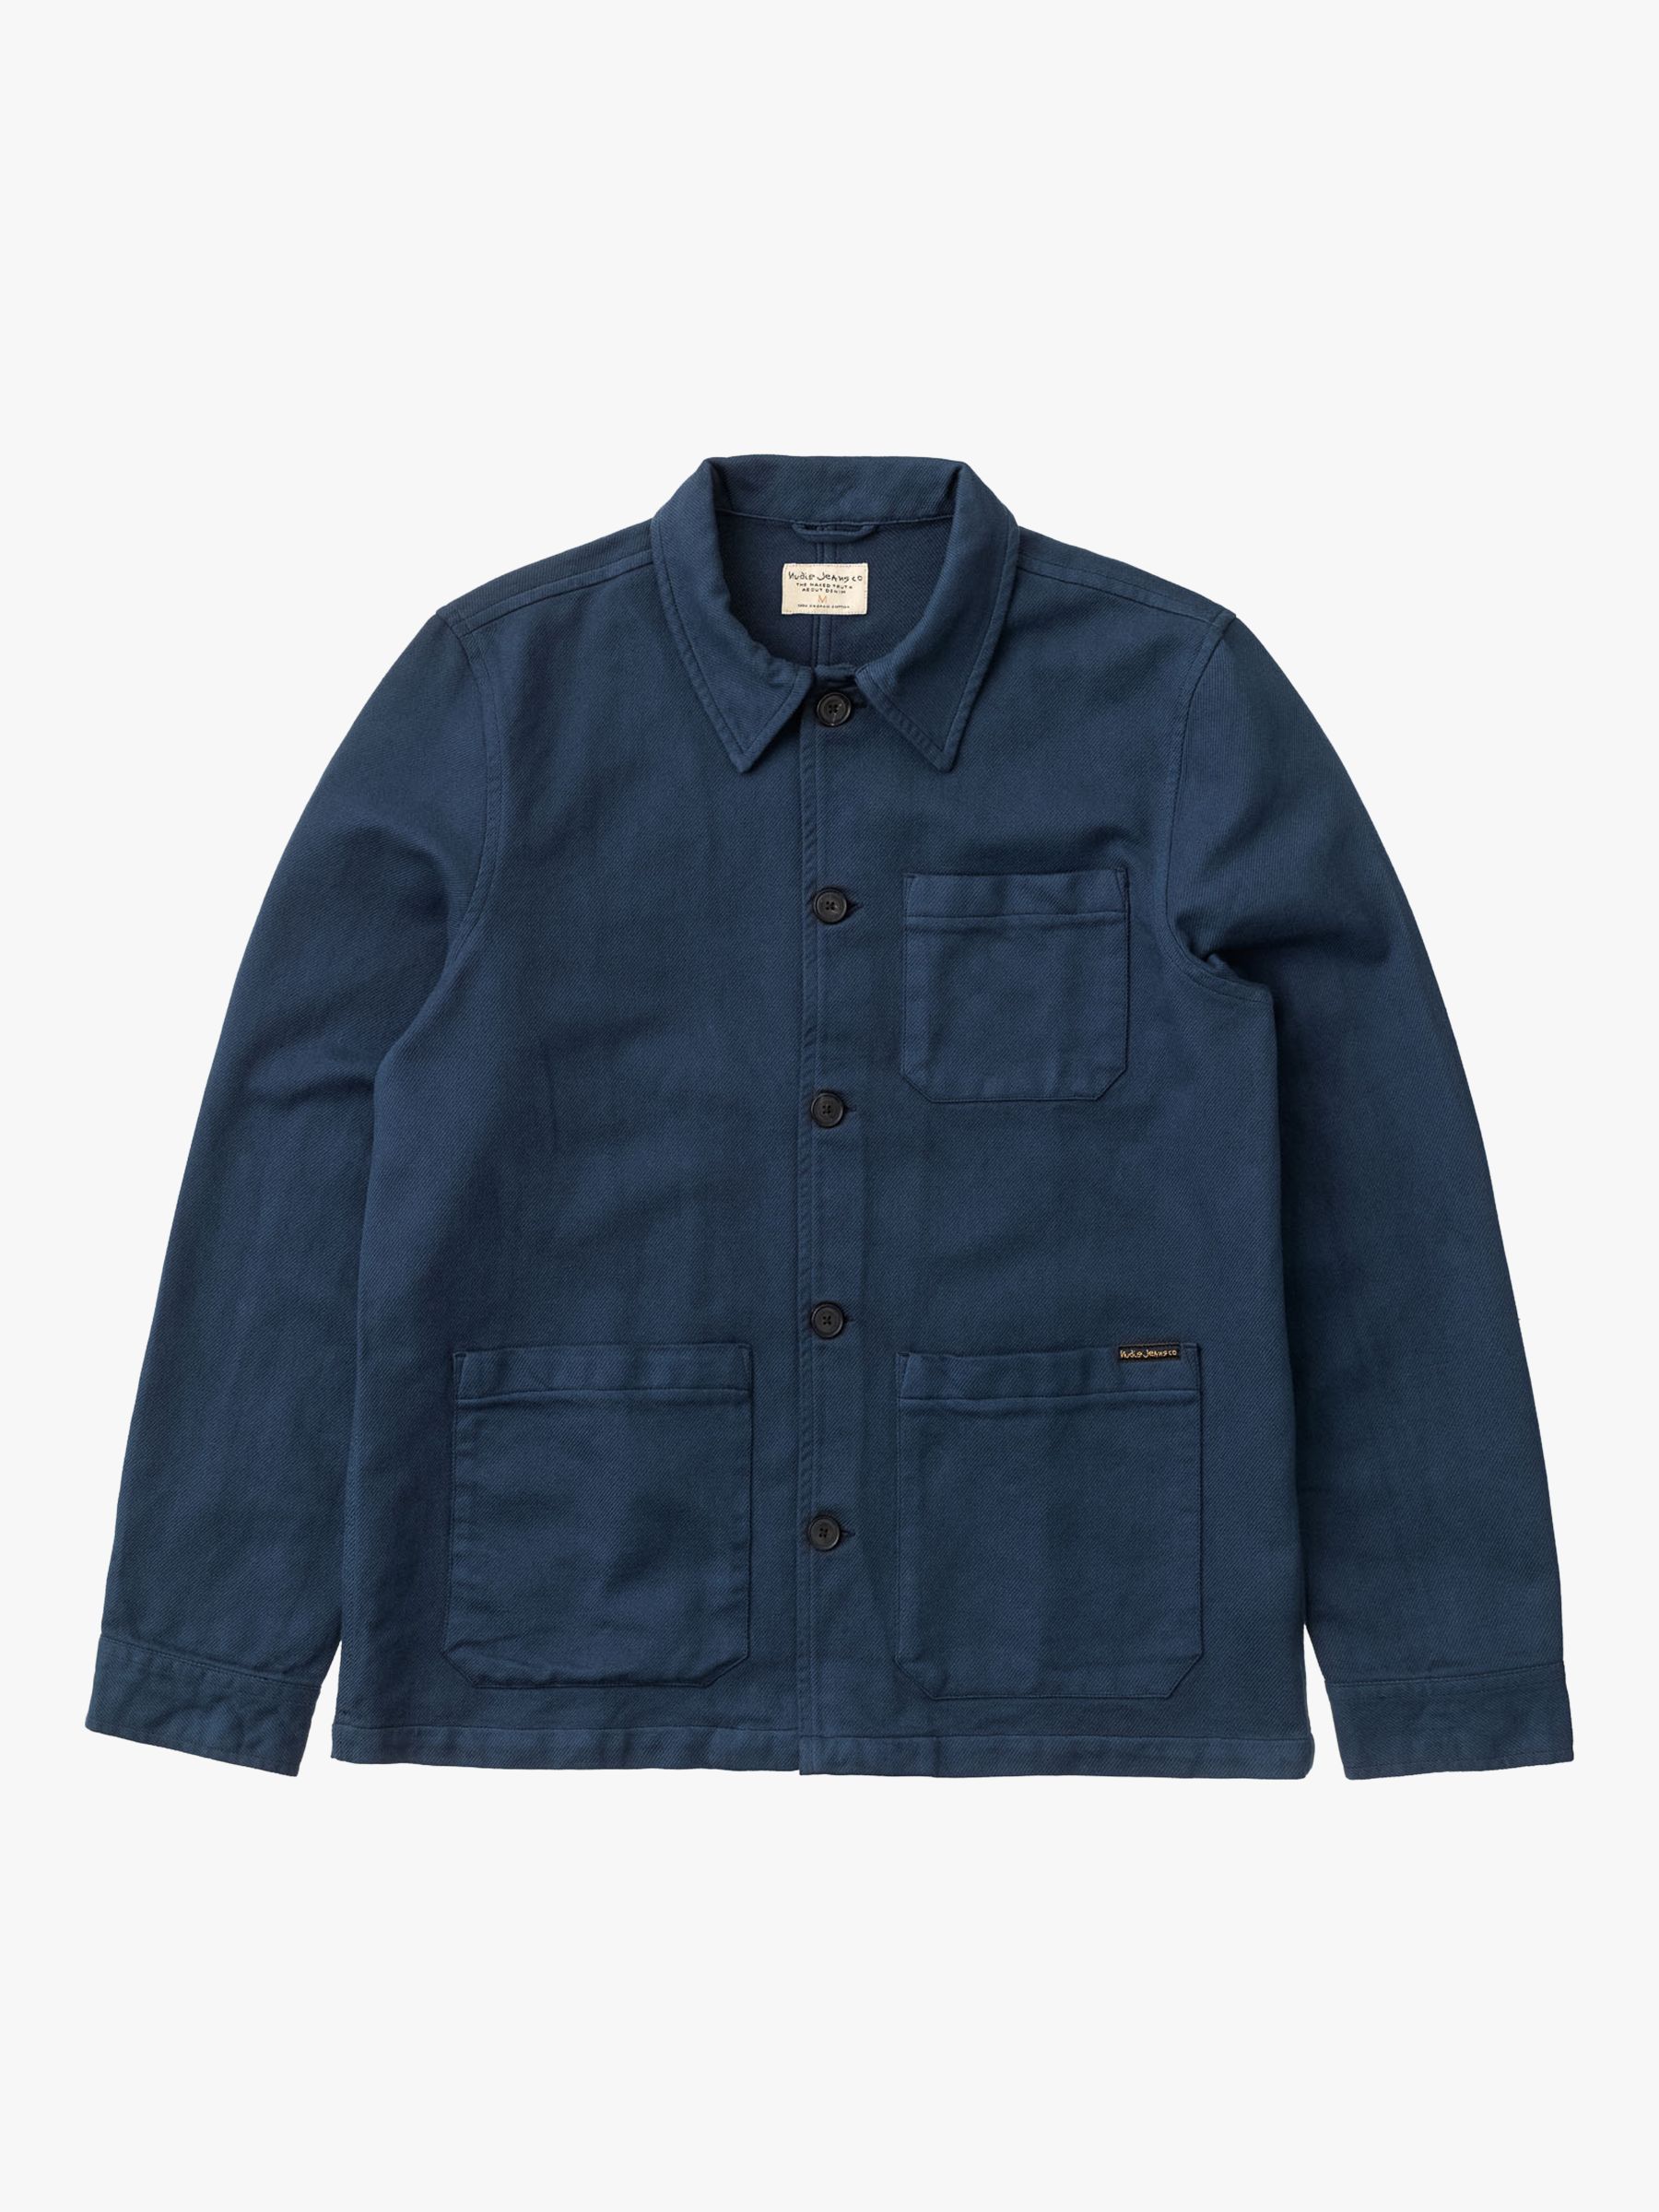 Nudie Jeans Barney Worker Jacket, Denim Blue, S